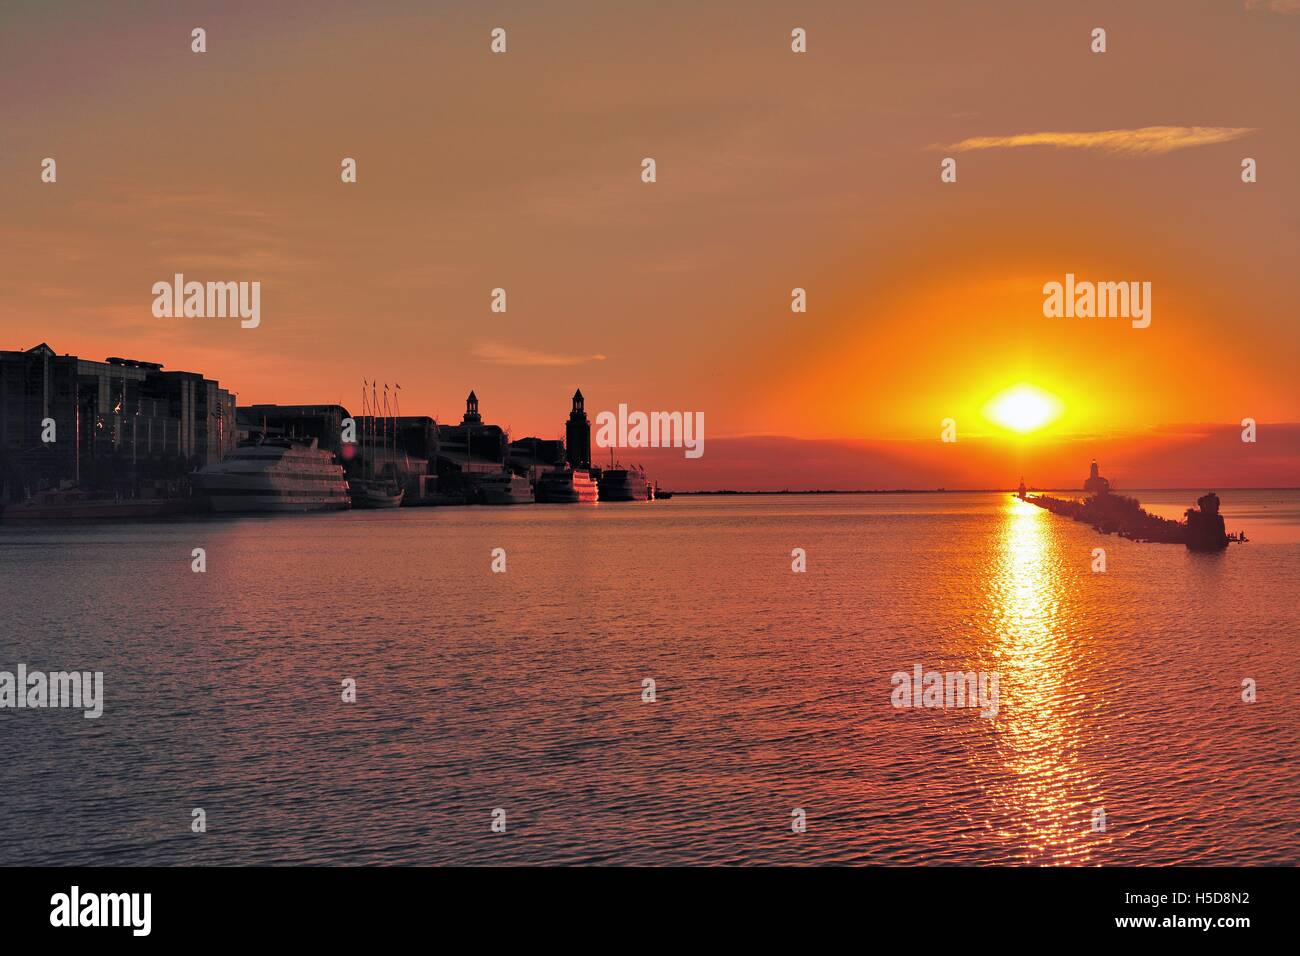 Bateaux amarrés à Chicago's Navy Pier à Chicago Harbour au lever du soleil sur un matin de fin d'été. Chicago, Illinois, USA. Banque D'Images